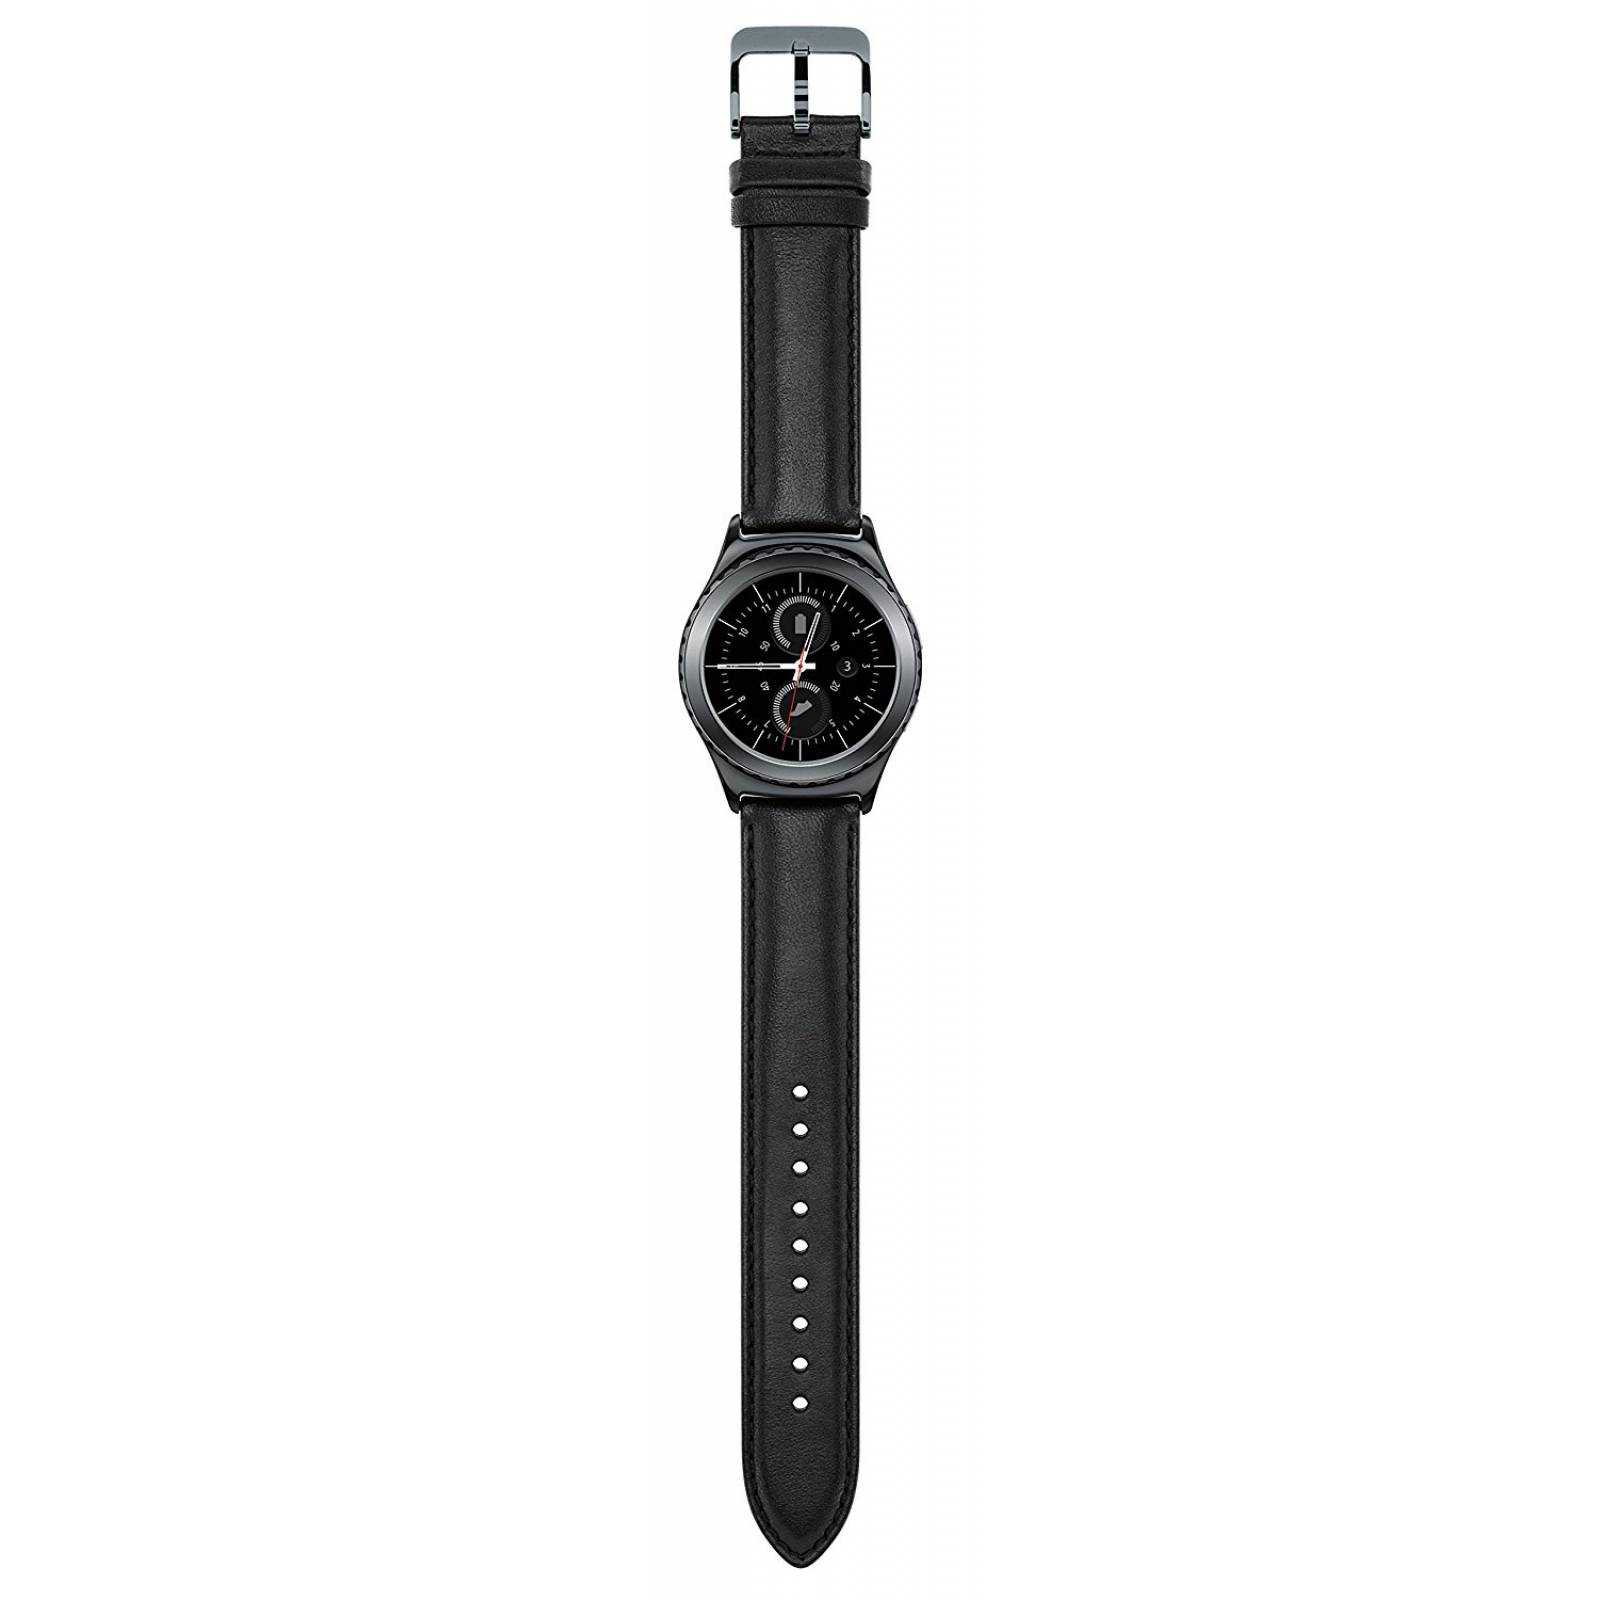 Equipo Samsung S2 Smartwatch - clásico